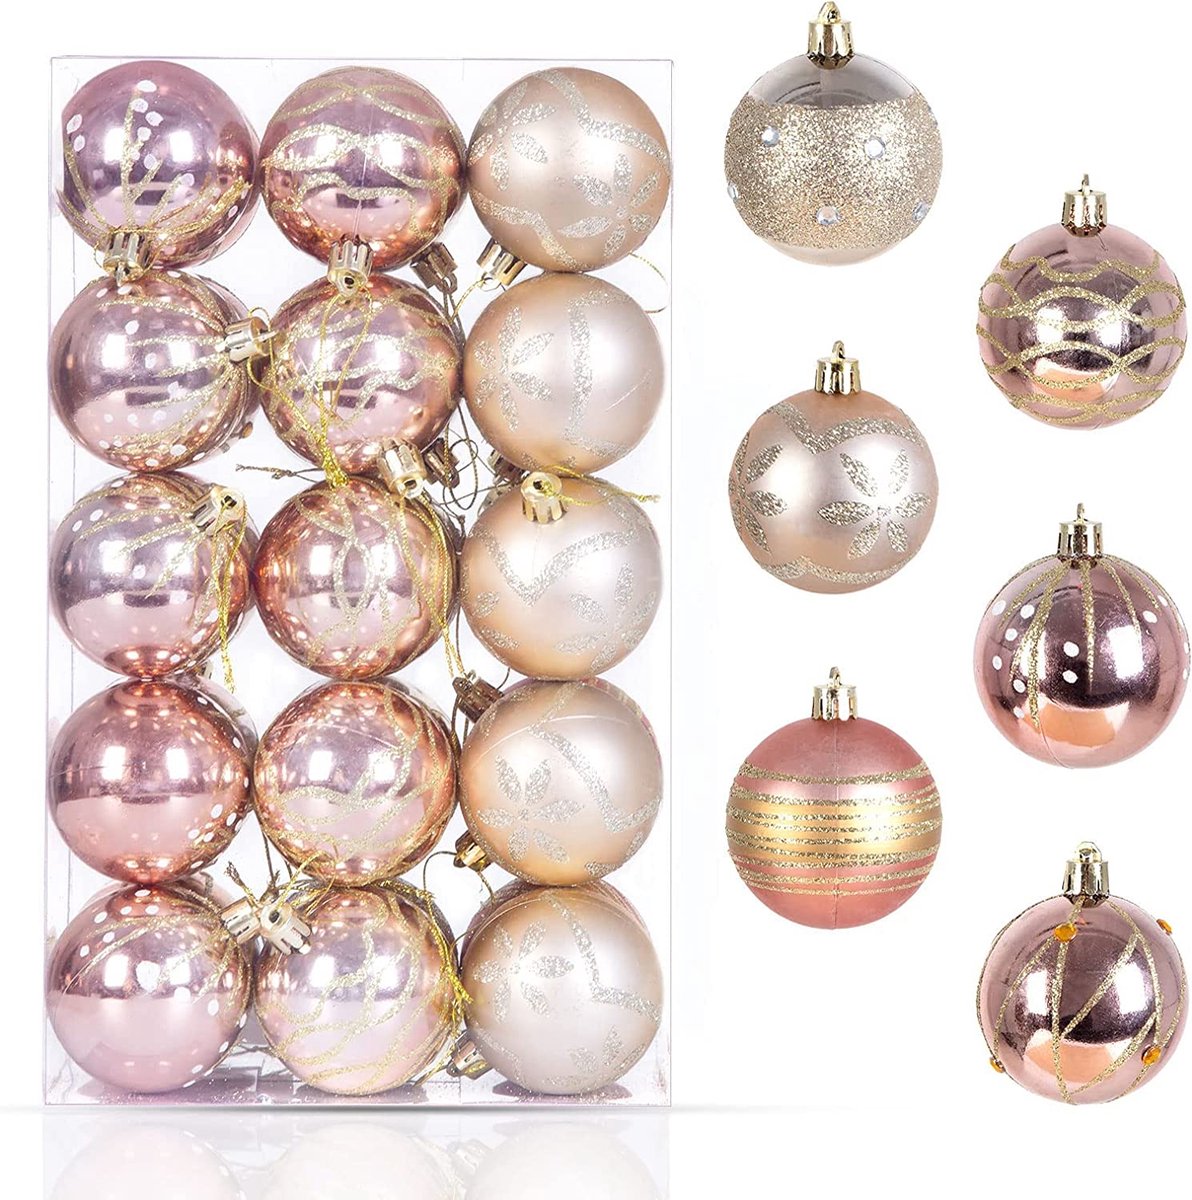 Uten - Kerstballen Plastic - kerstboom versiering - Christmas Gifts - kerstballen set - 30 stuks - kerstboom ballen - Ø6cm - Roze/Goud